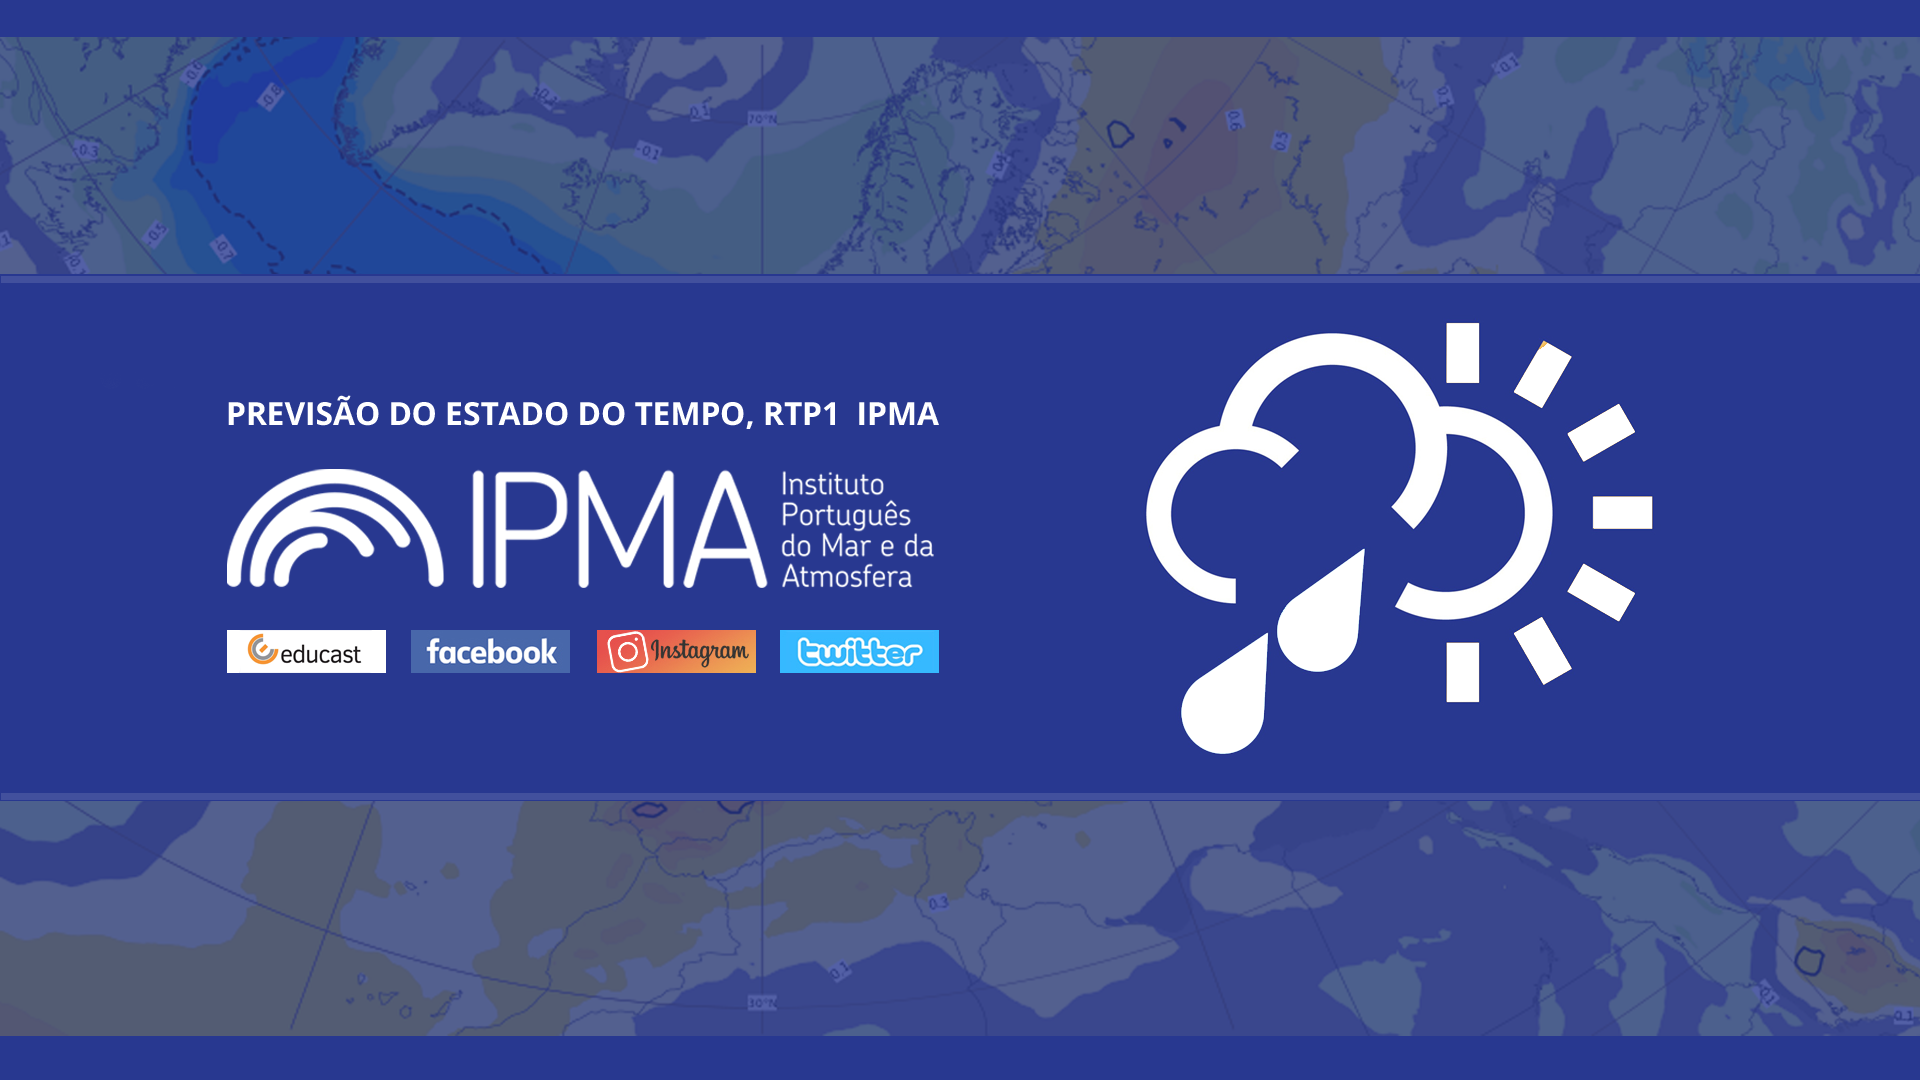  Previsão do estado do tempo, RTP1, 07-03-2022, IPMA.